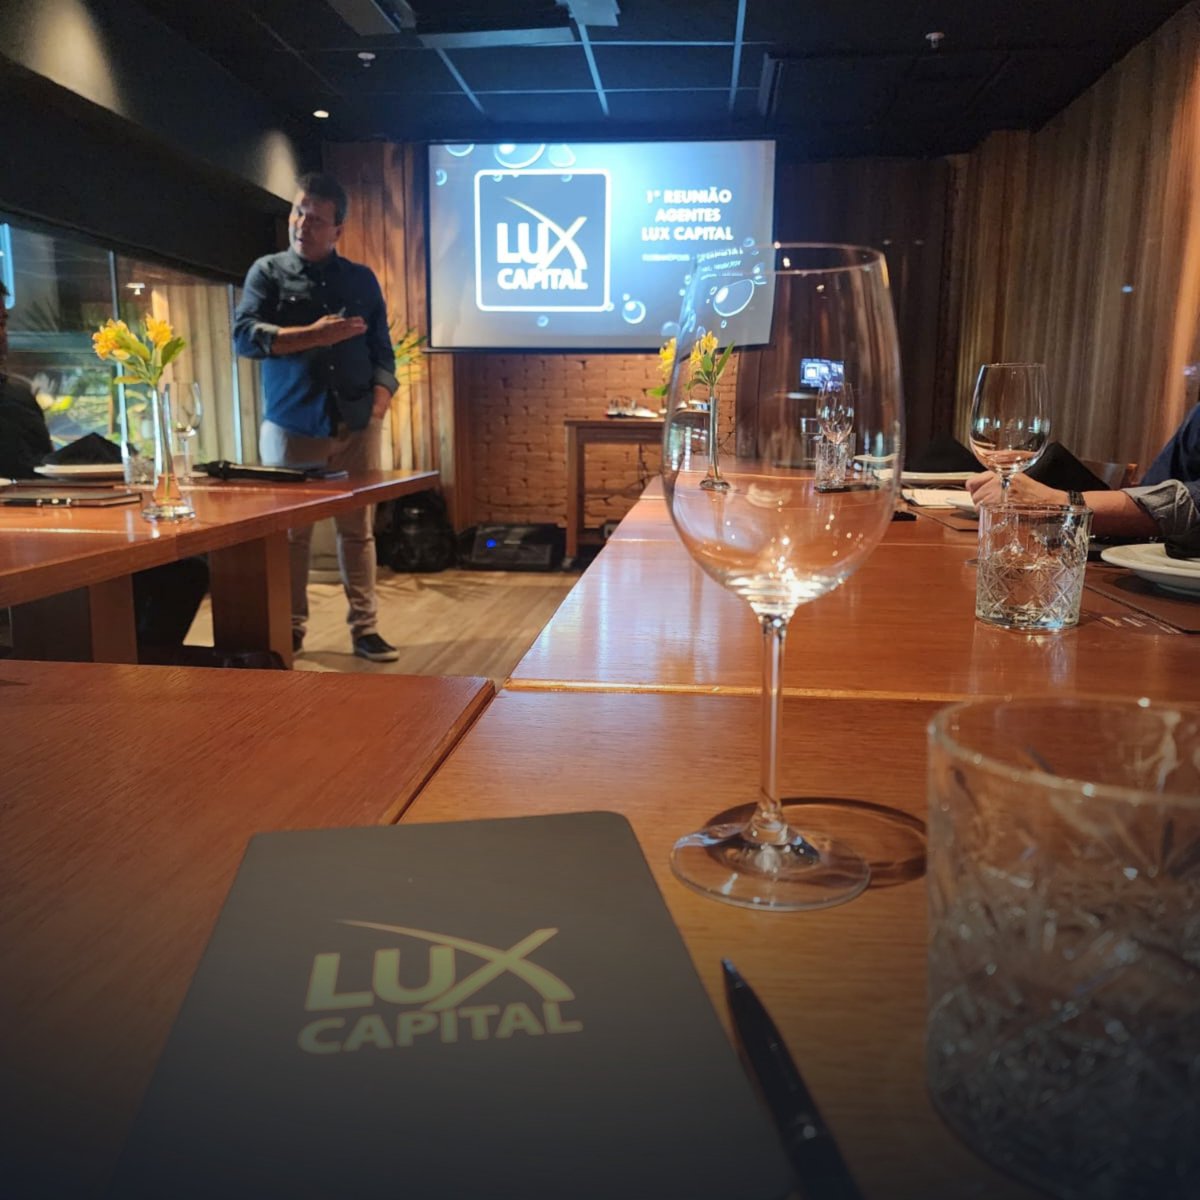 El Encuentro de Agentes de Lux Capital fue un verdadero hito, donde discutimos las últimas tendencias en tecnología e inversiones privadas. Mantente atento a más noticias emocionantes y oportunidades que están por venir. lux.capital #LuxCapital #Inversiones